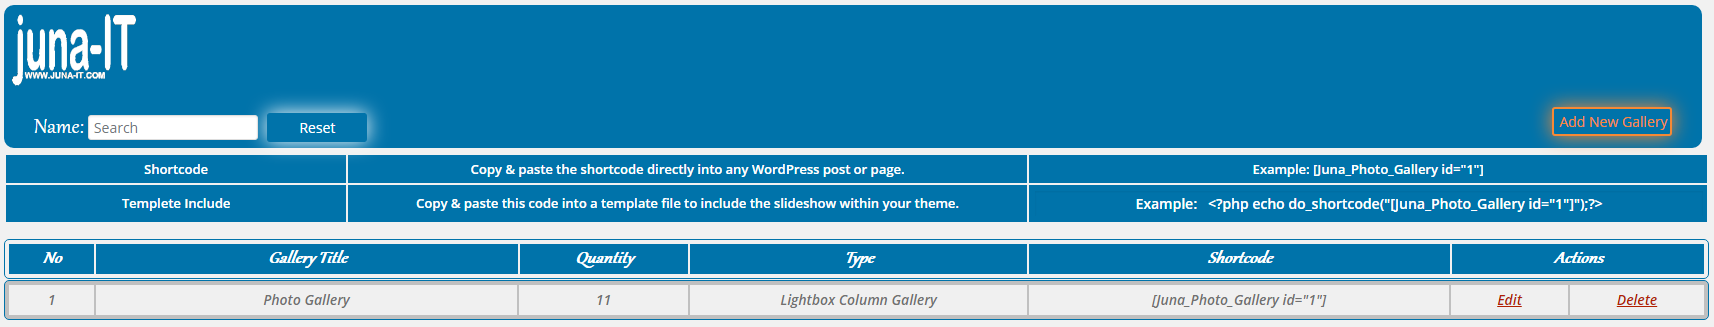 WordPress Plugin - Add New